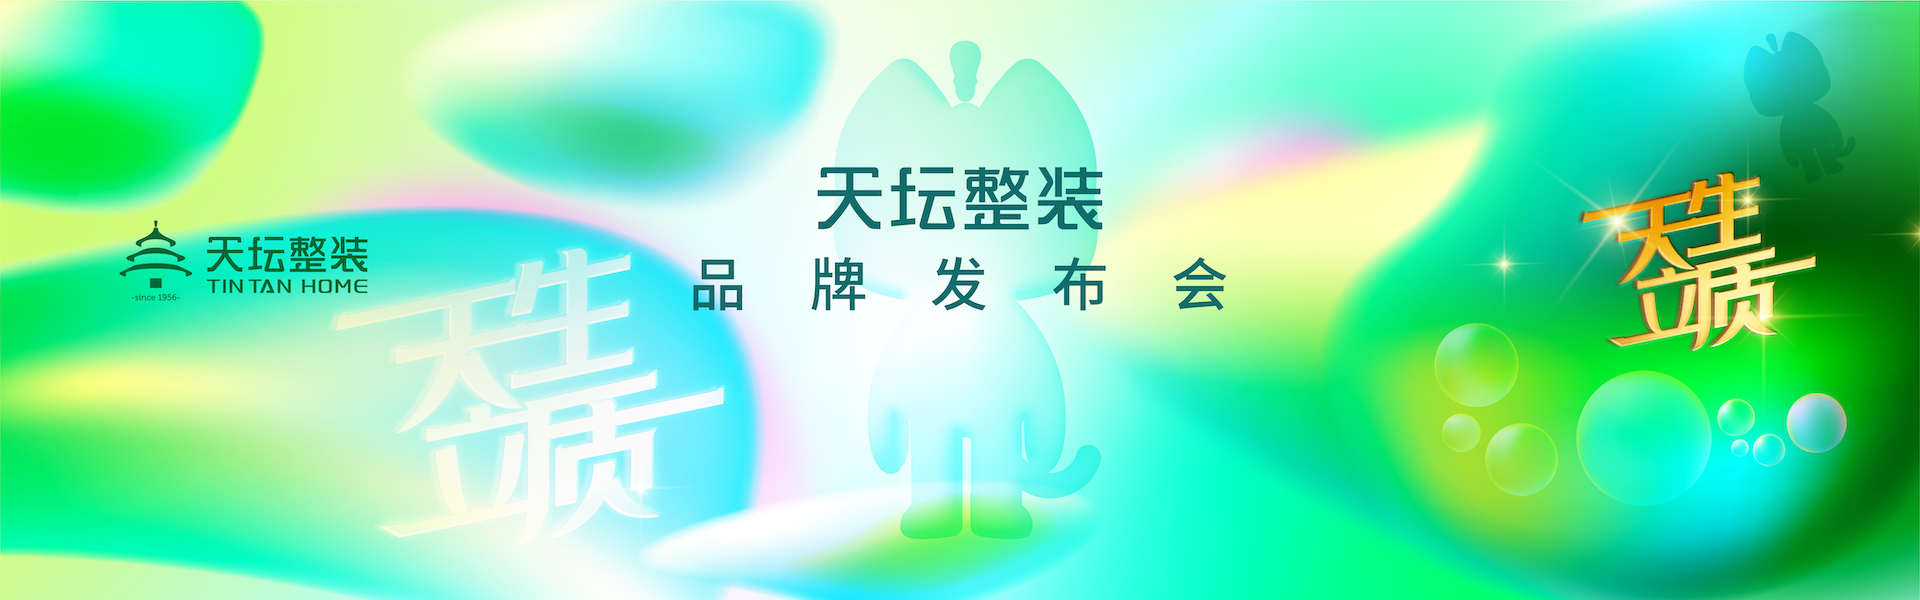 7月12日，天生立质.天坛整装品牌发布会在金隅智造工厂举行。